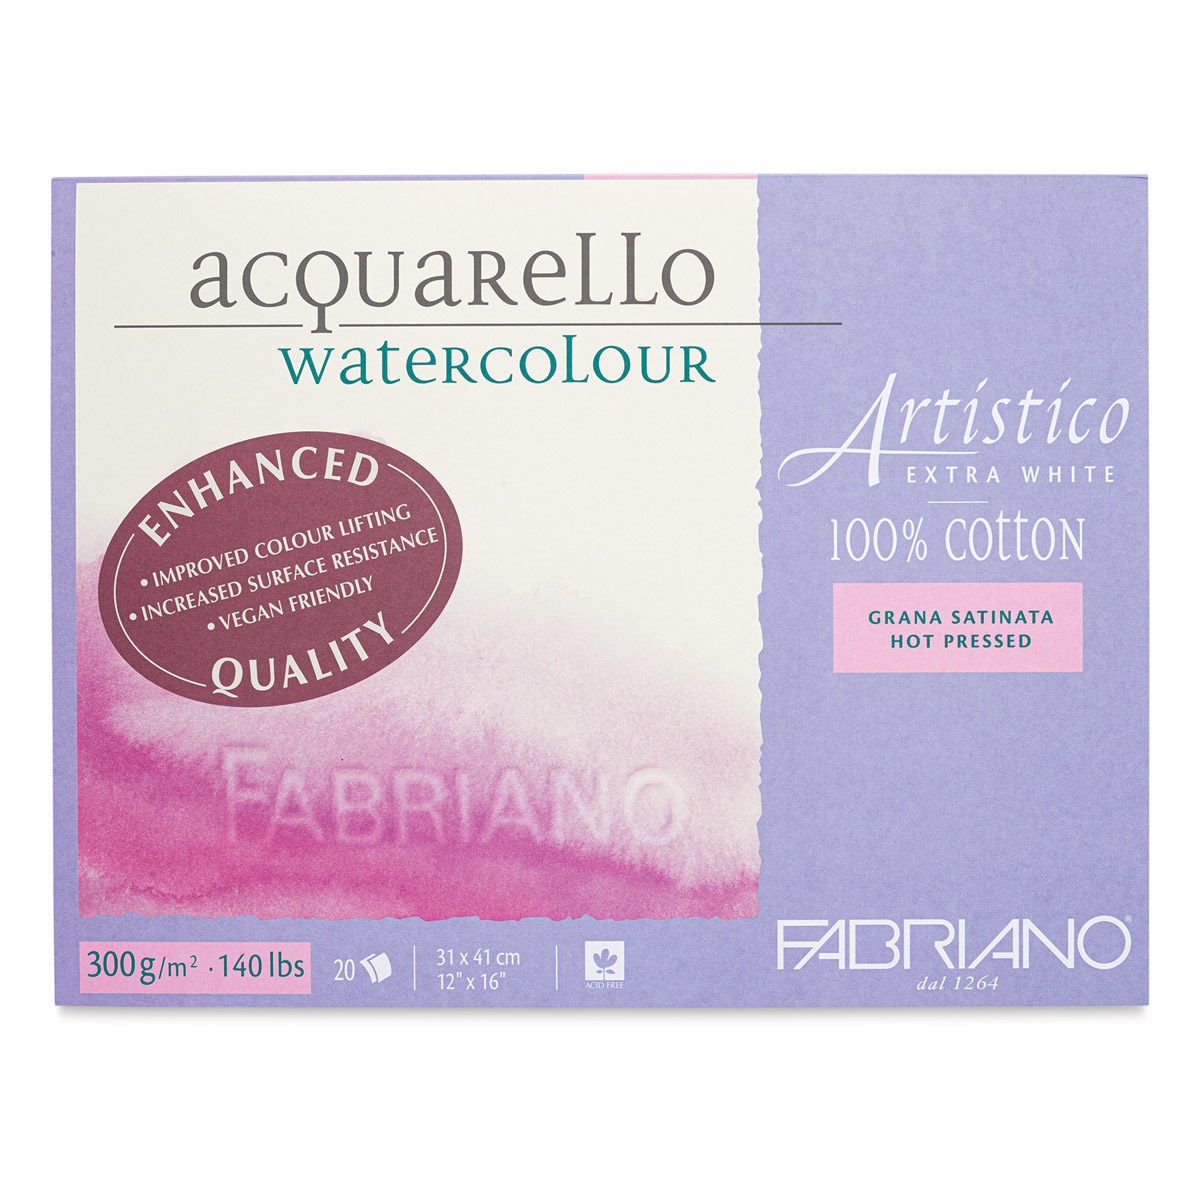 Fabriano Artistico Watercolor Block, 25 sheets, 5 x 7